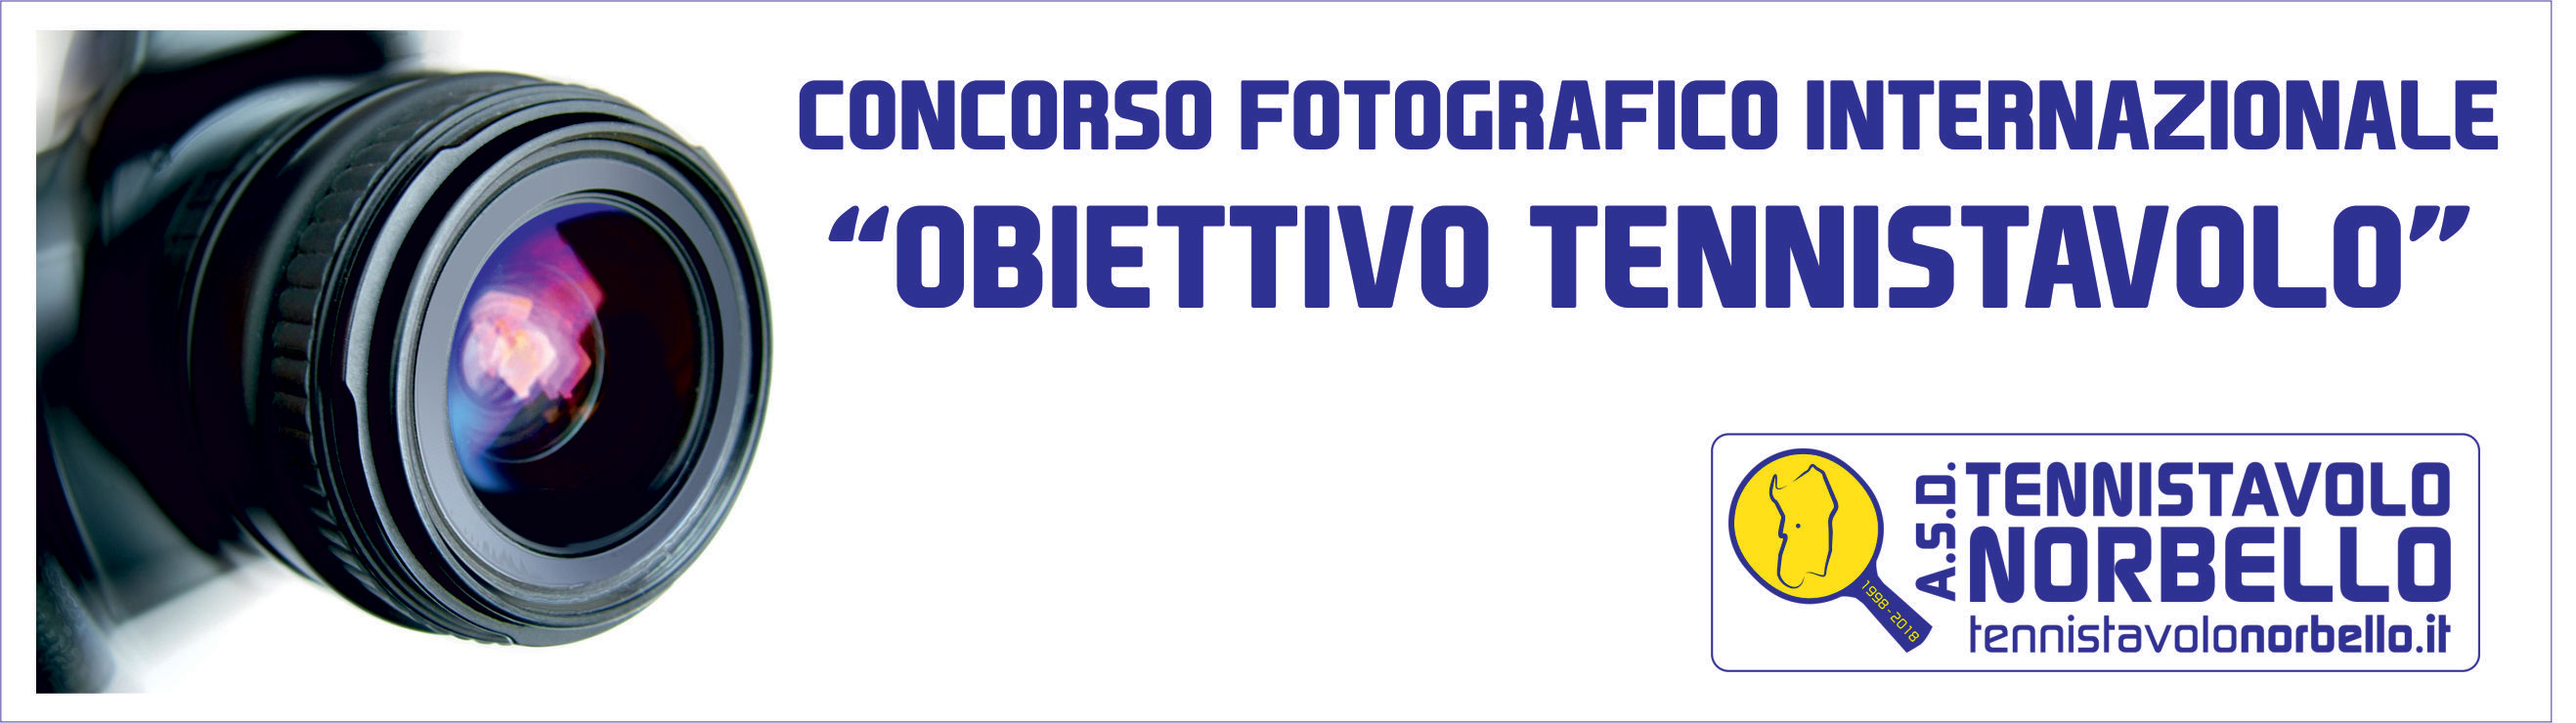 Banner Concorso Fotografico Internazionale Obiettivo Tennistavolo 2020